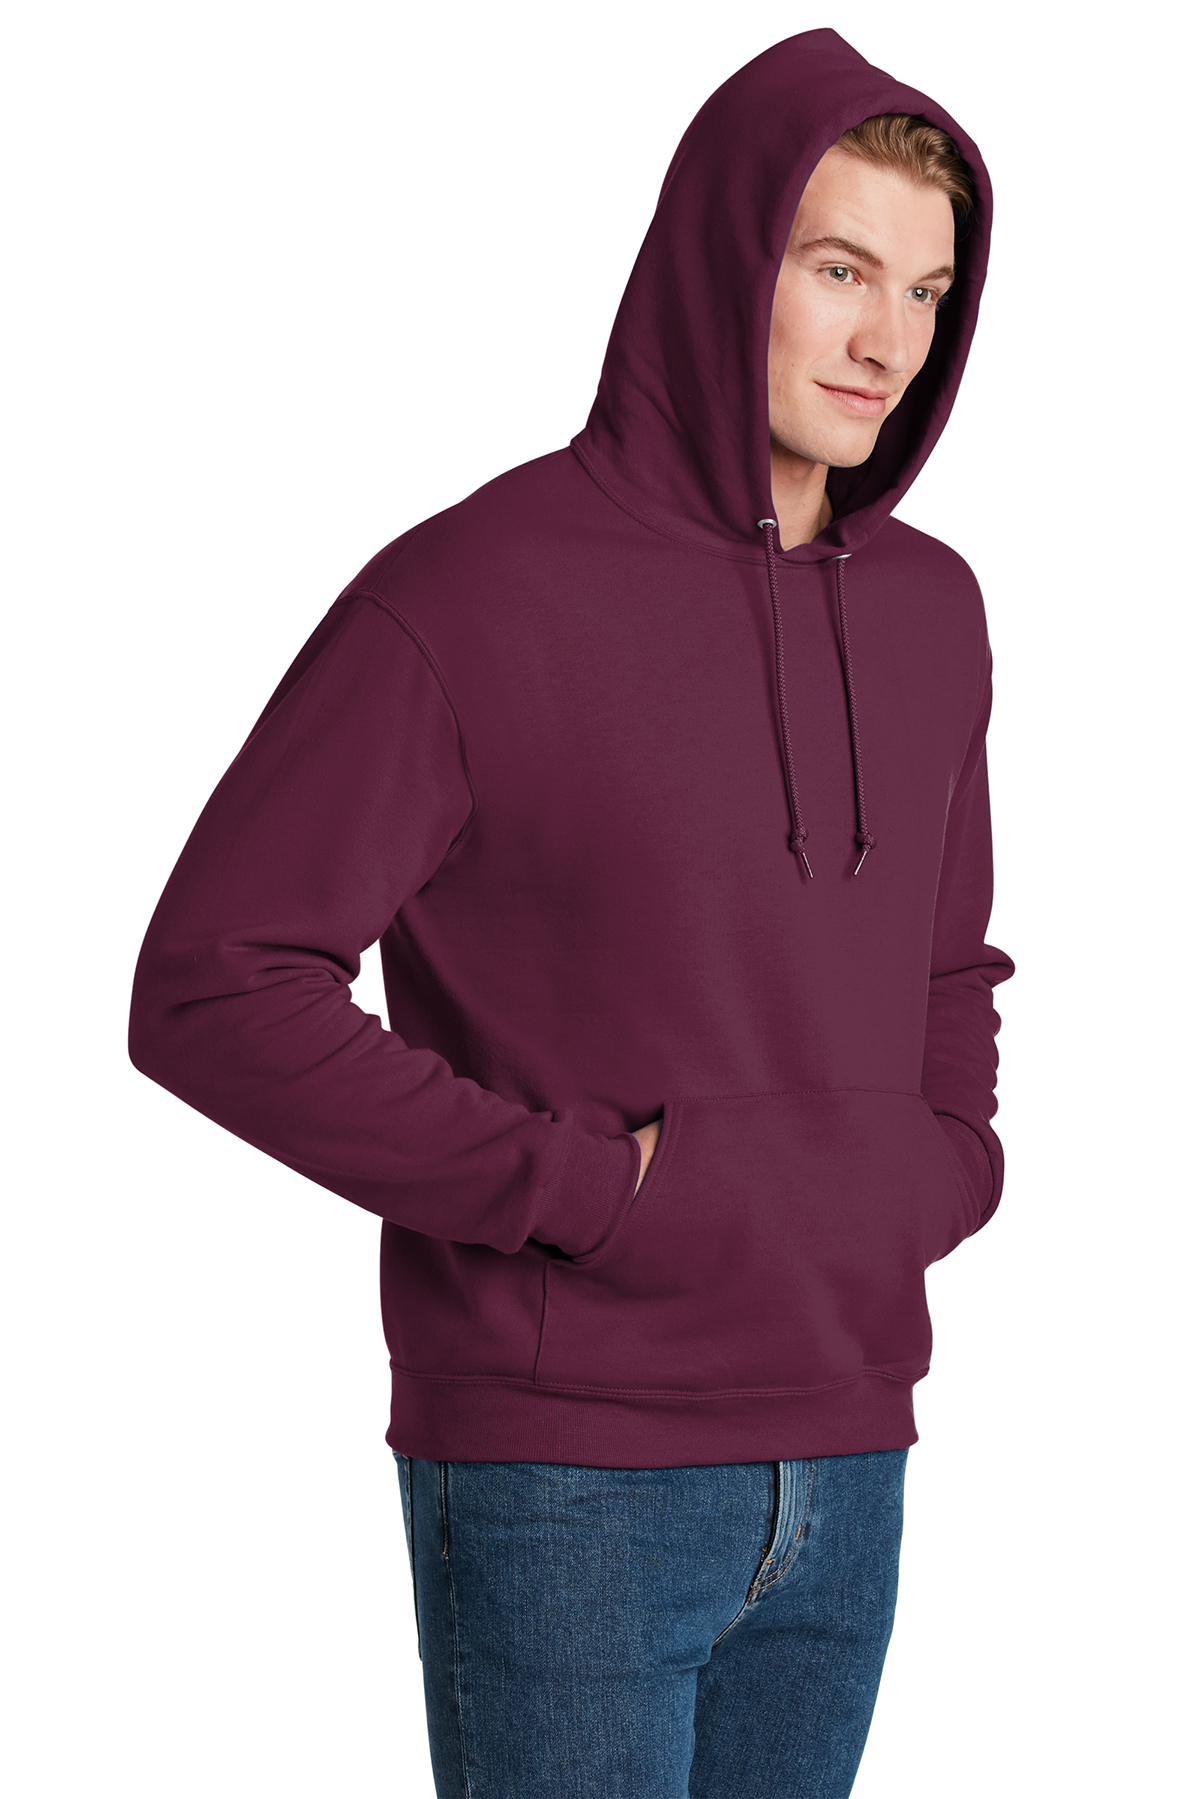 JERZEES - NuBlend Pullover Hooded Sweatshirt | Product | SanMar